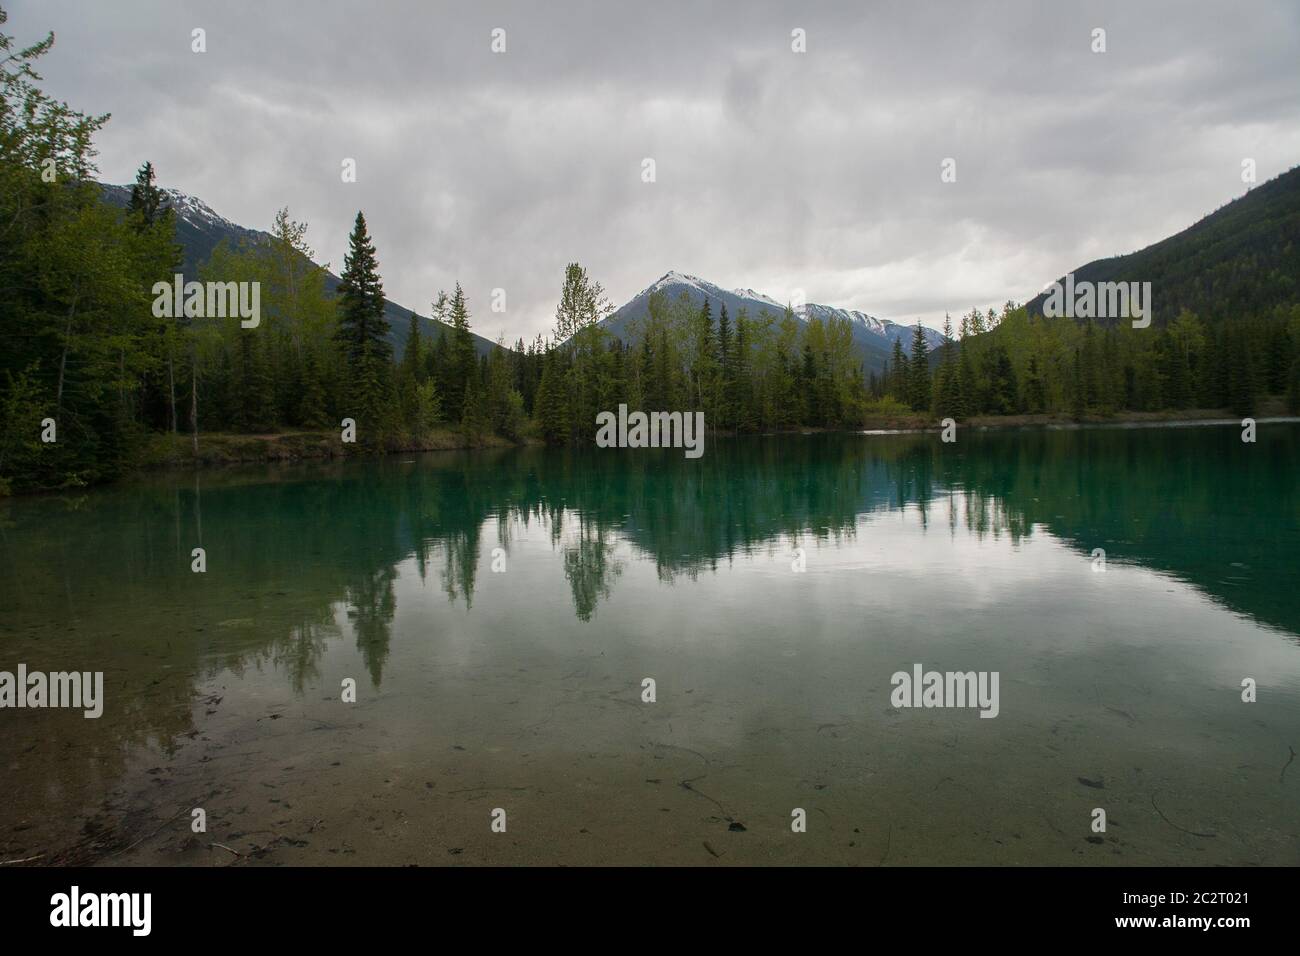 Paisaje escénico de un lago de montañas rocosas en Alberta, Canadá con clima lluvioso Foto de stock